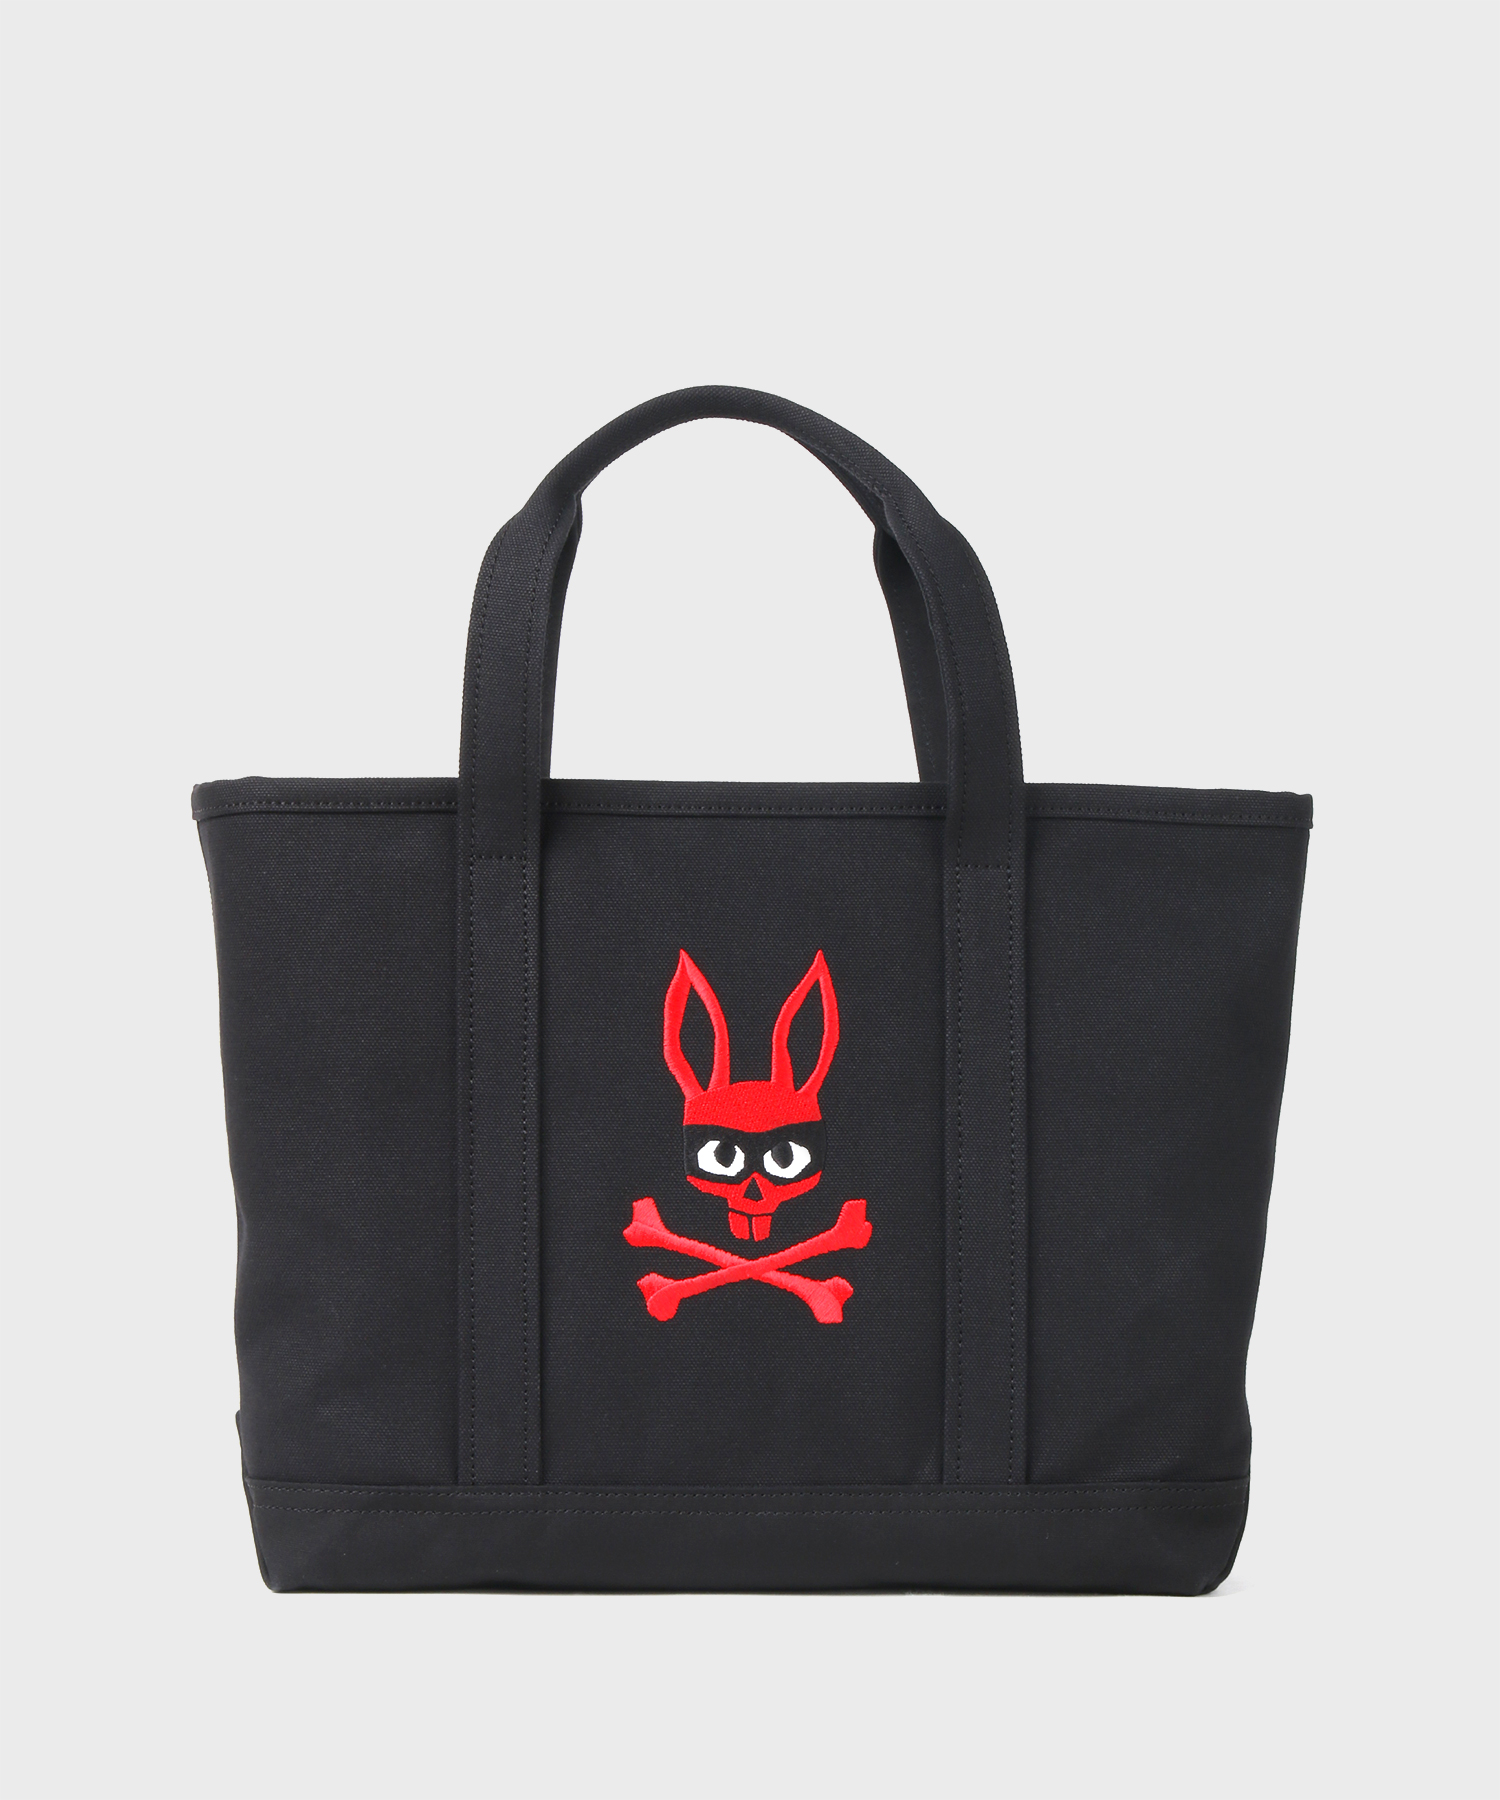 Psycho Bunny｜サイコバニー 公式ブランドサイト – Psycho Bunny JAPAN 